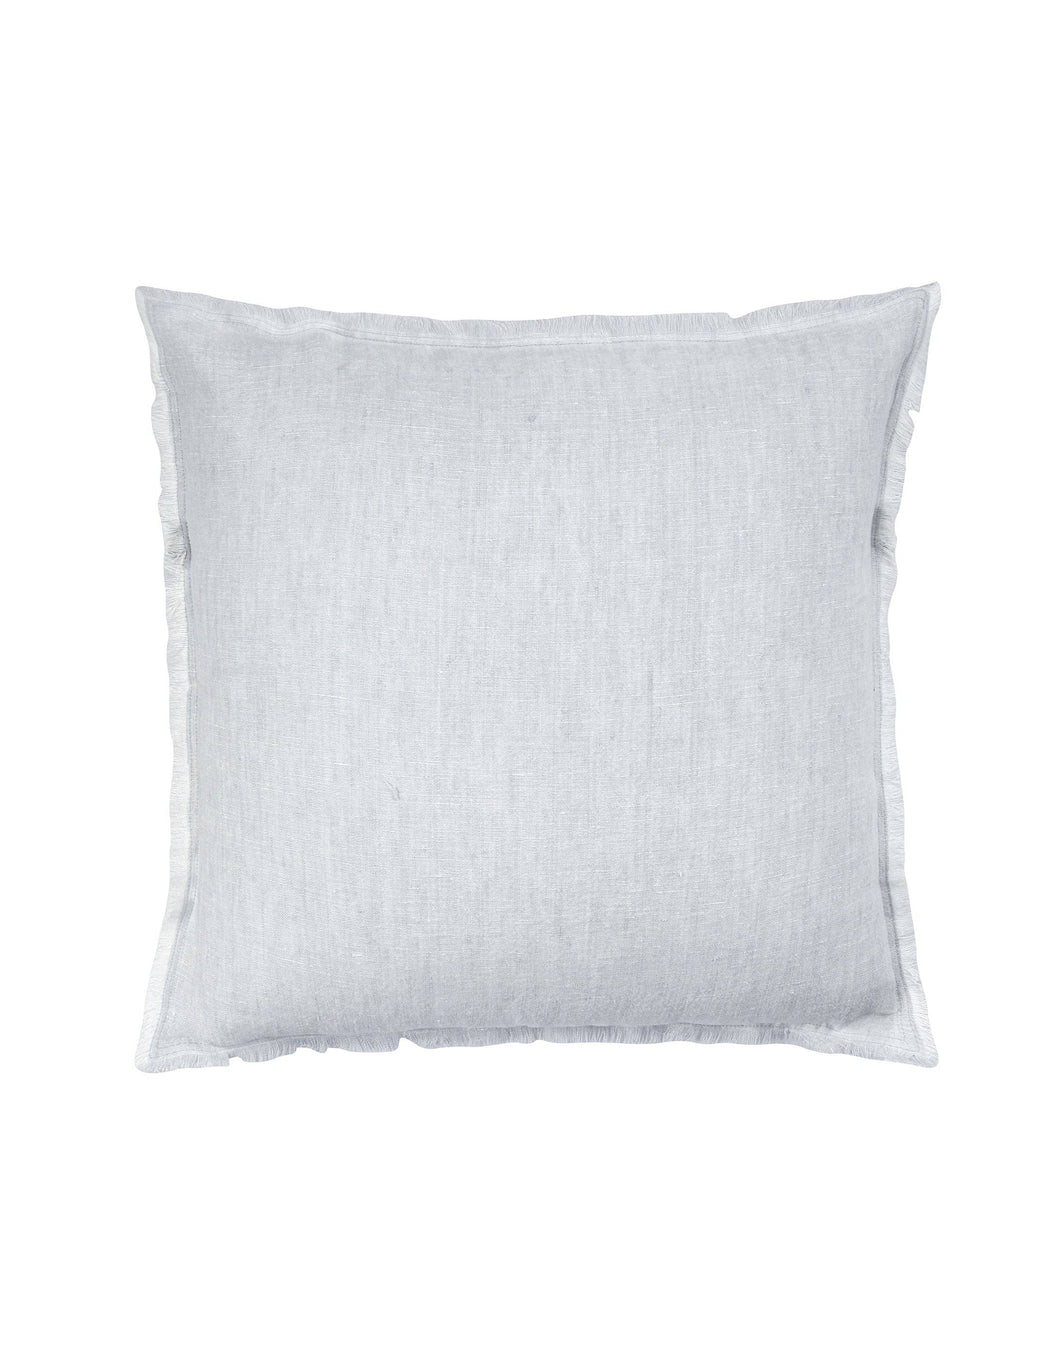 Light Grey Crossdye So Soft Linen Pillow - 20x20”